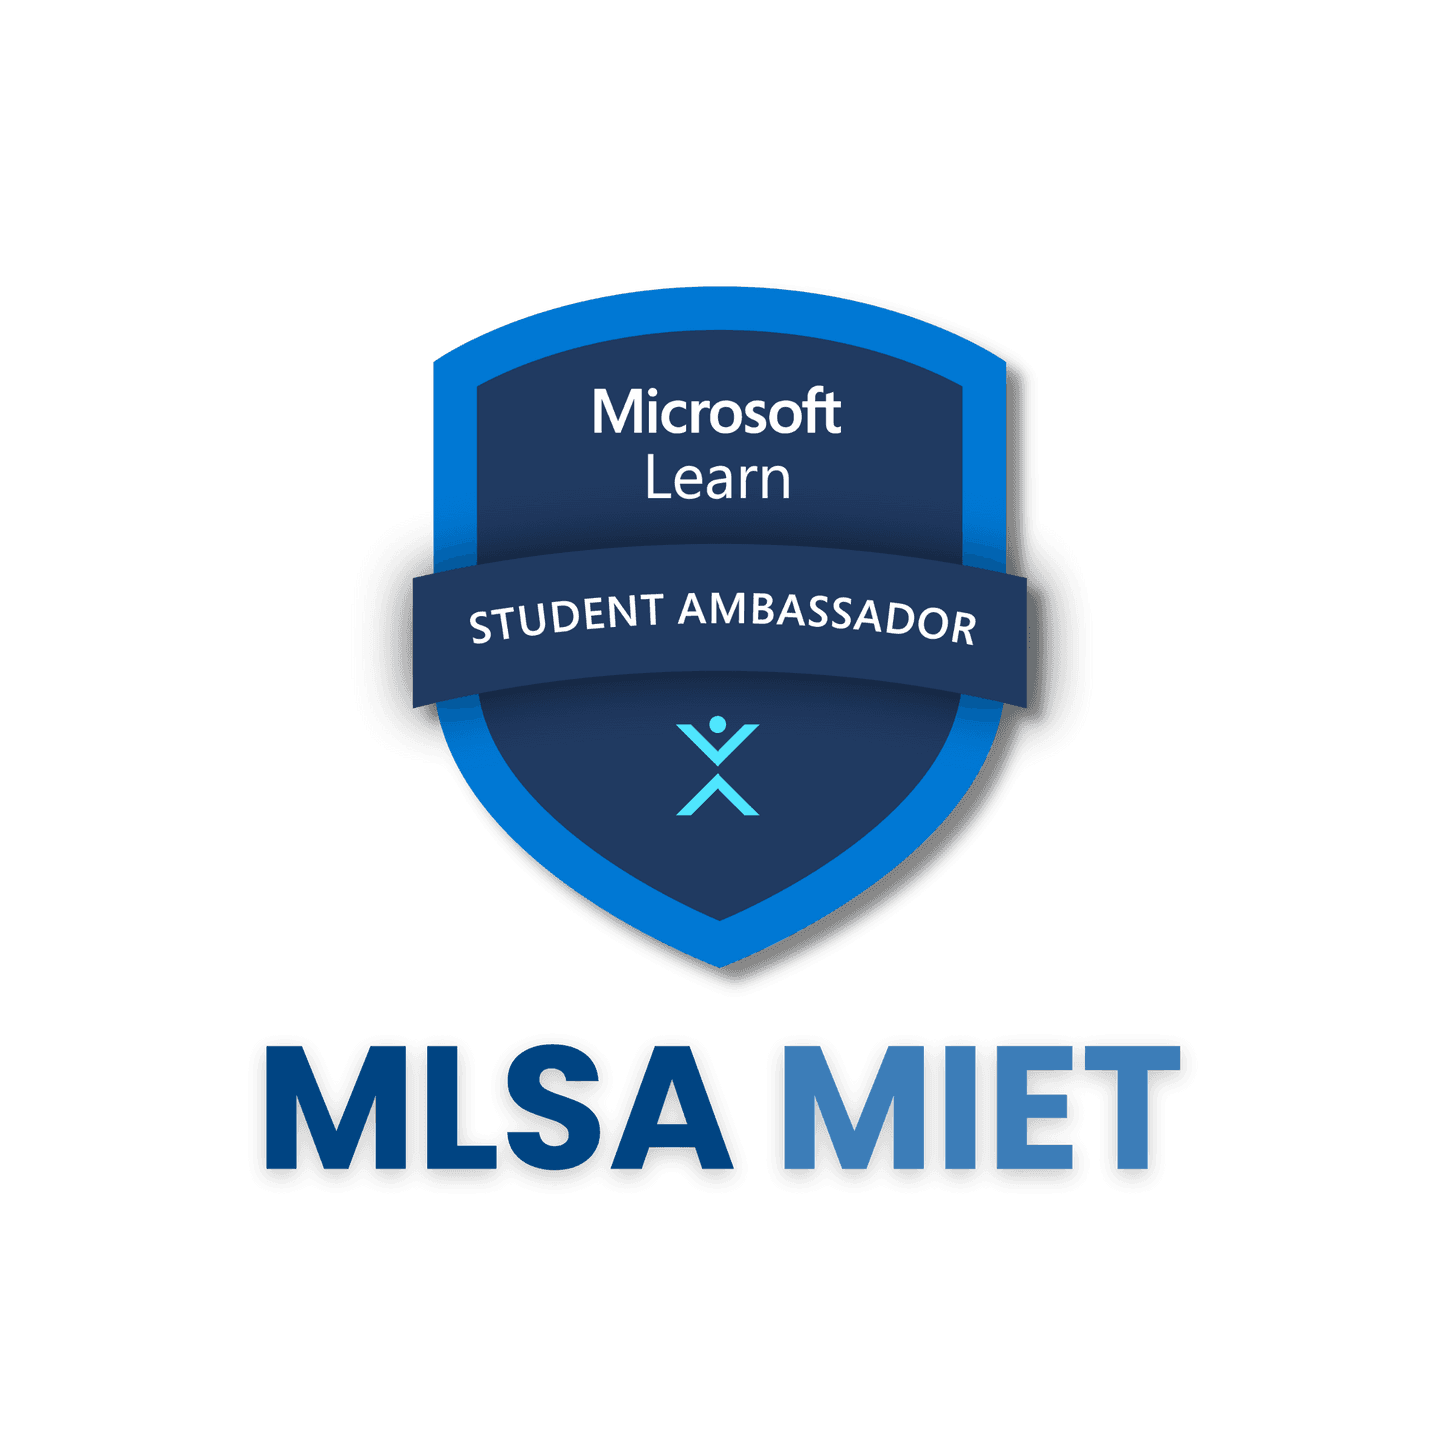 MLSA MIET DevGathering Hackathon